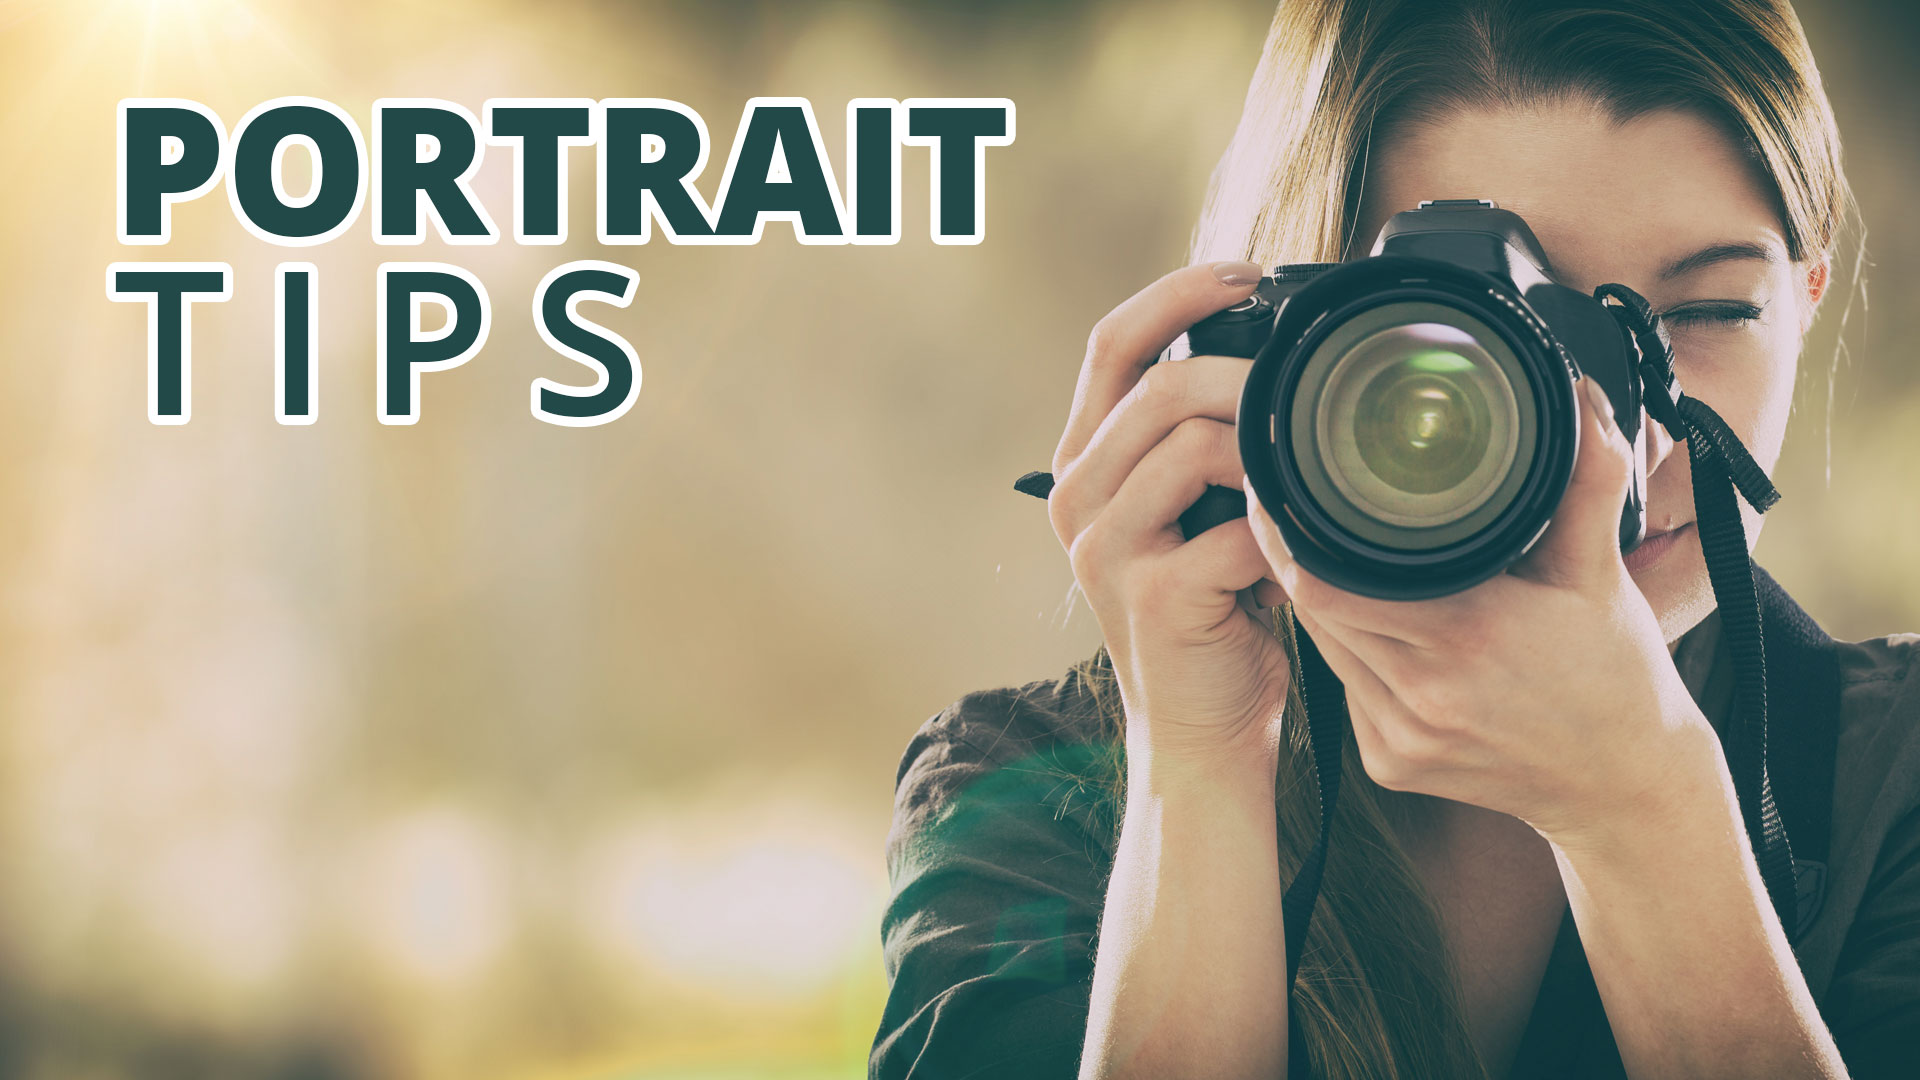 Portrait Tips: Crop the top